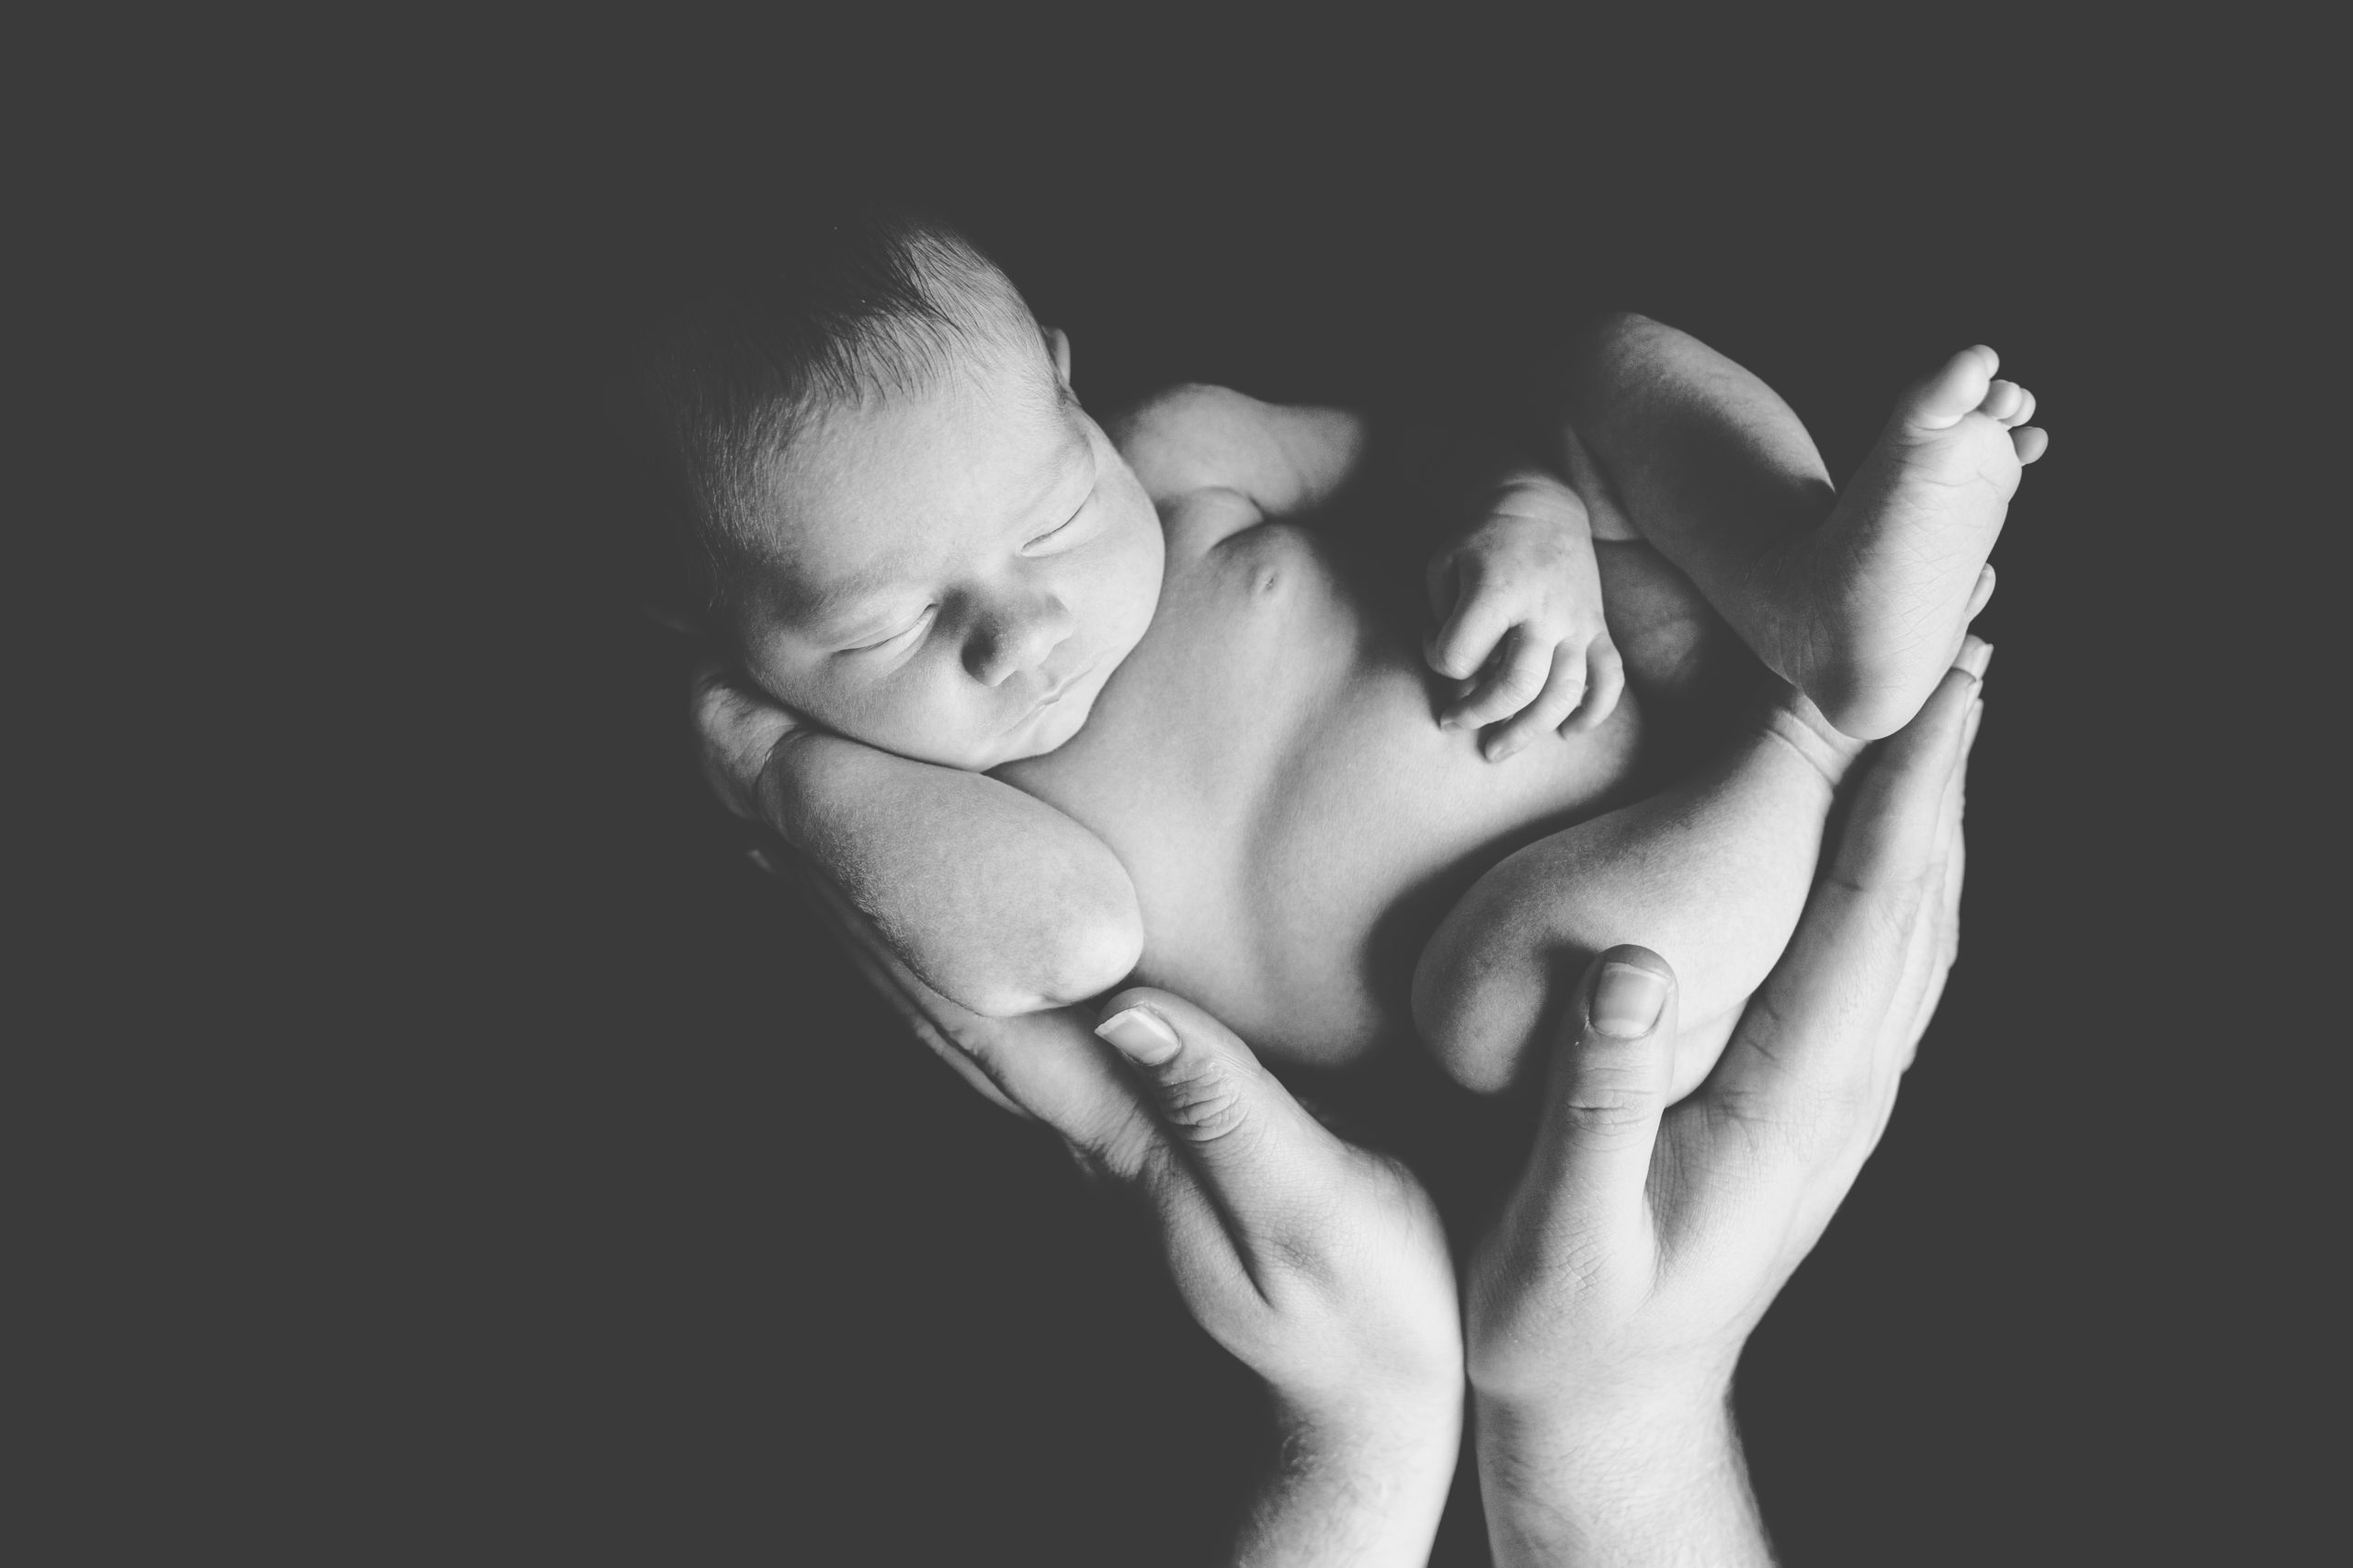 photo nouveau-né bébé lit laine homeophoto nouveau-né bébé main papa homeostasie photographie Liège